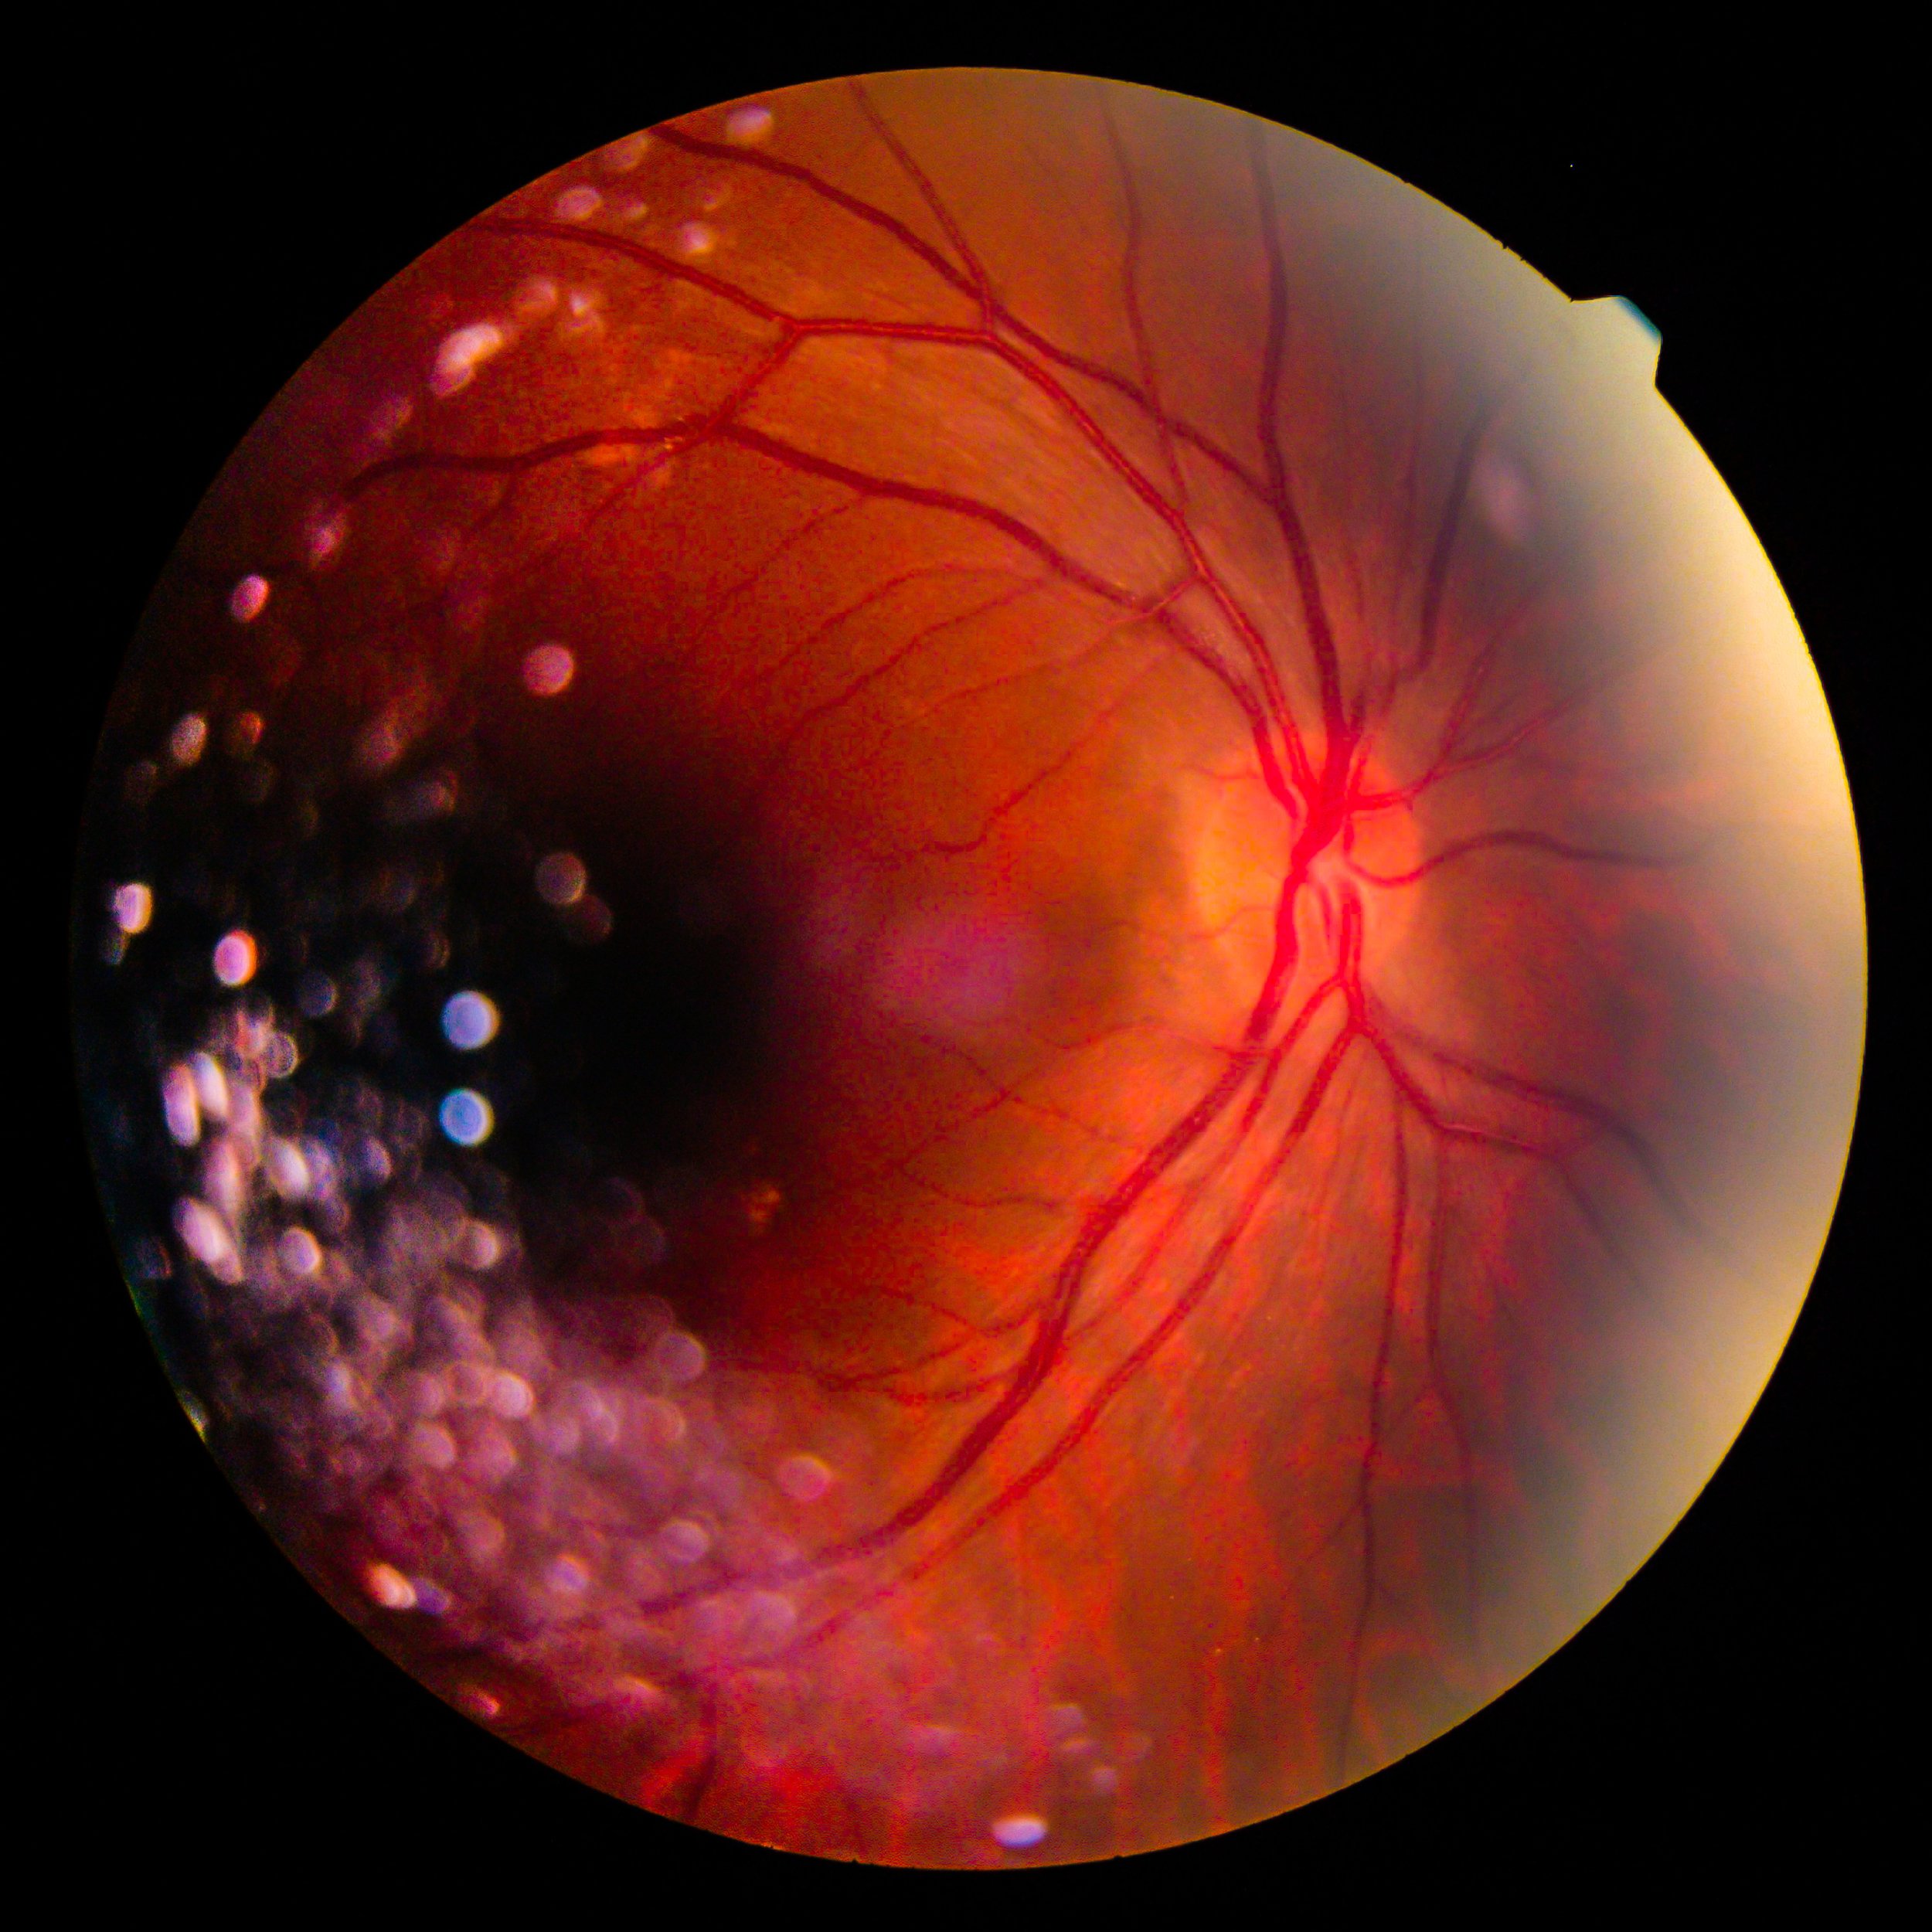 Пигментный ретинит сетчатки. Лазерная коагуляция сетчатки. Палочки сетчатки раздражаются. Диабетическая ангиопатия сетчатки капли.